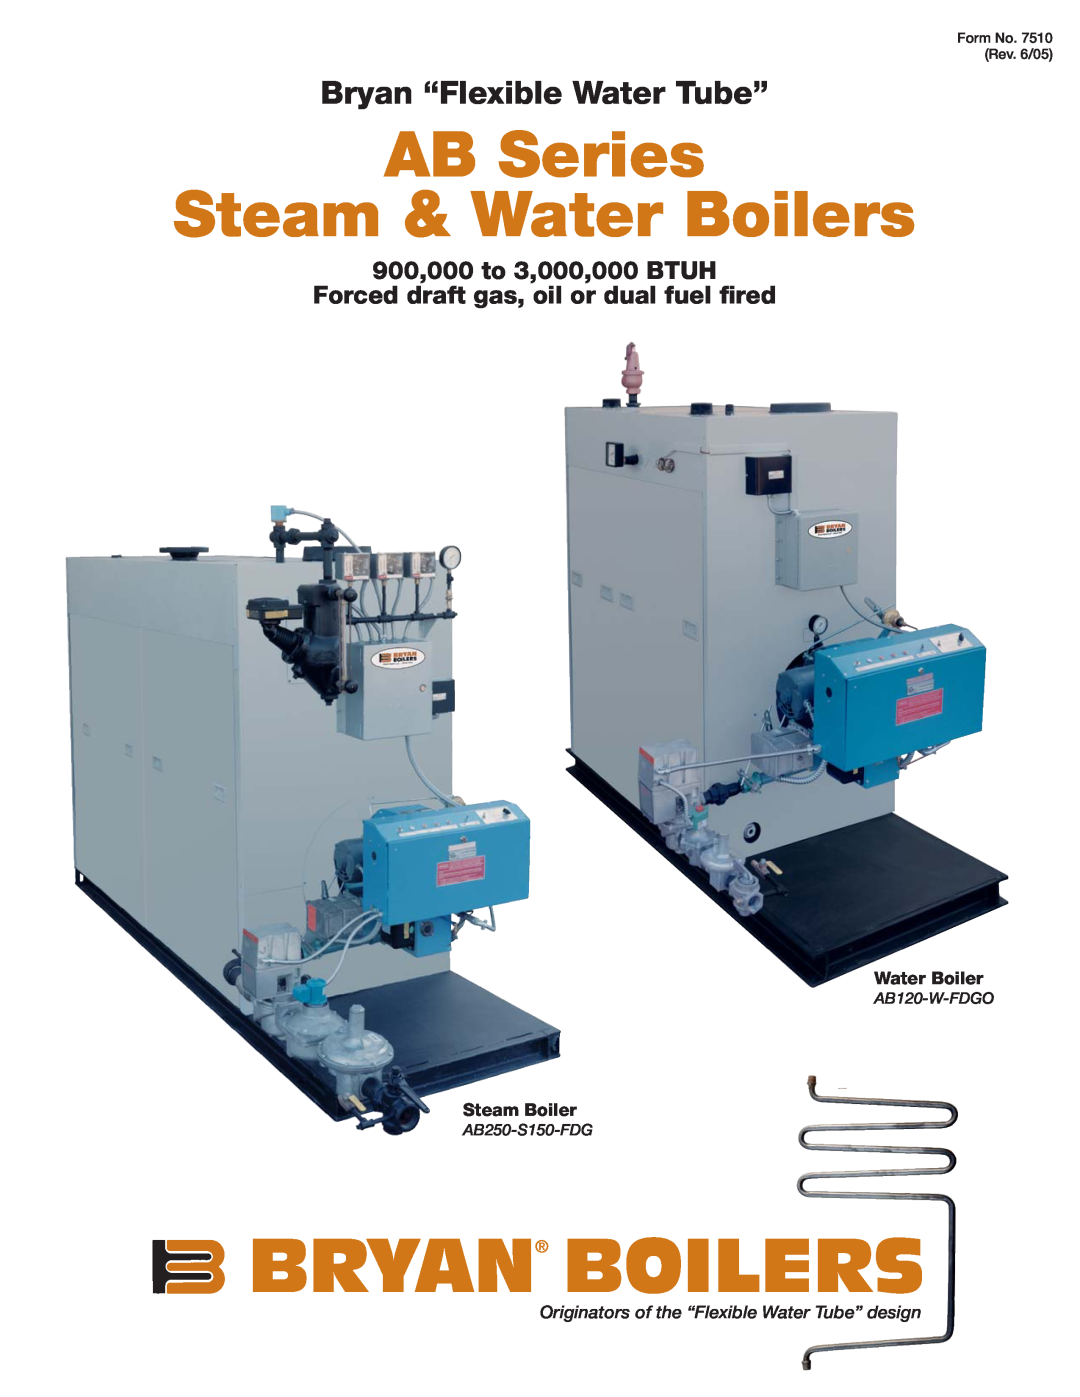 Bryan Boilers AB120-W-FDGO manual Bryan Boilers, AB Series Steam & Water Boilers, Bryan “Flexible Water Tube” 